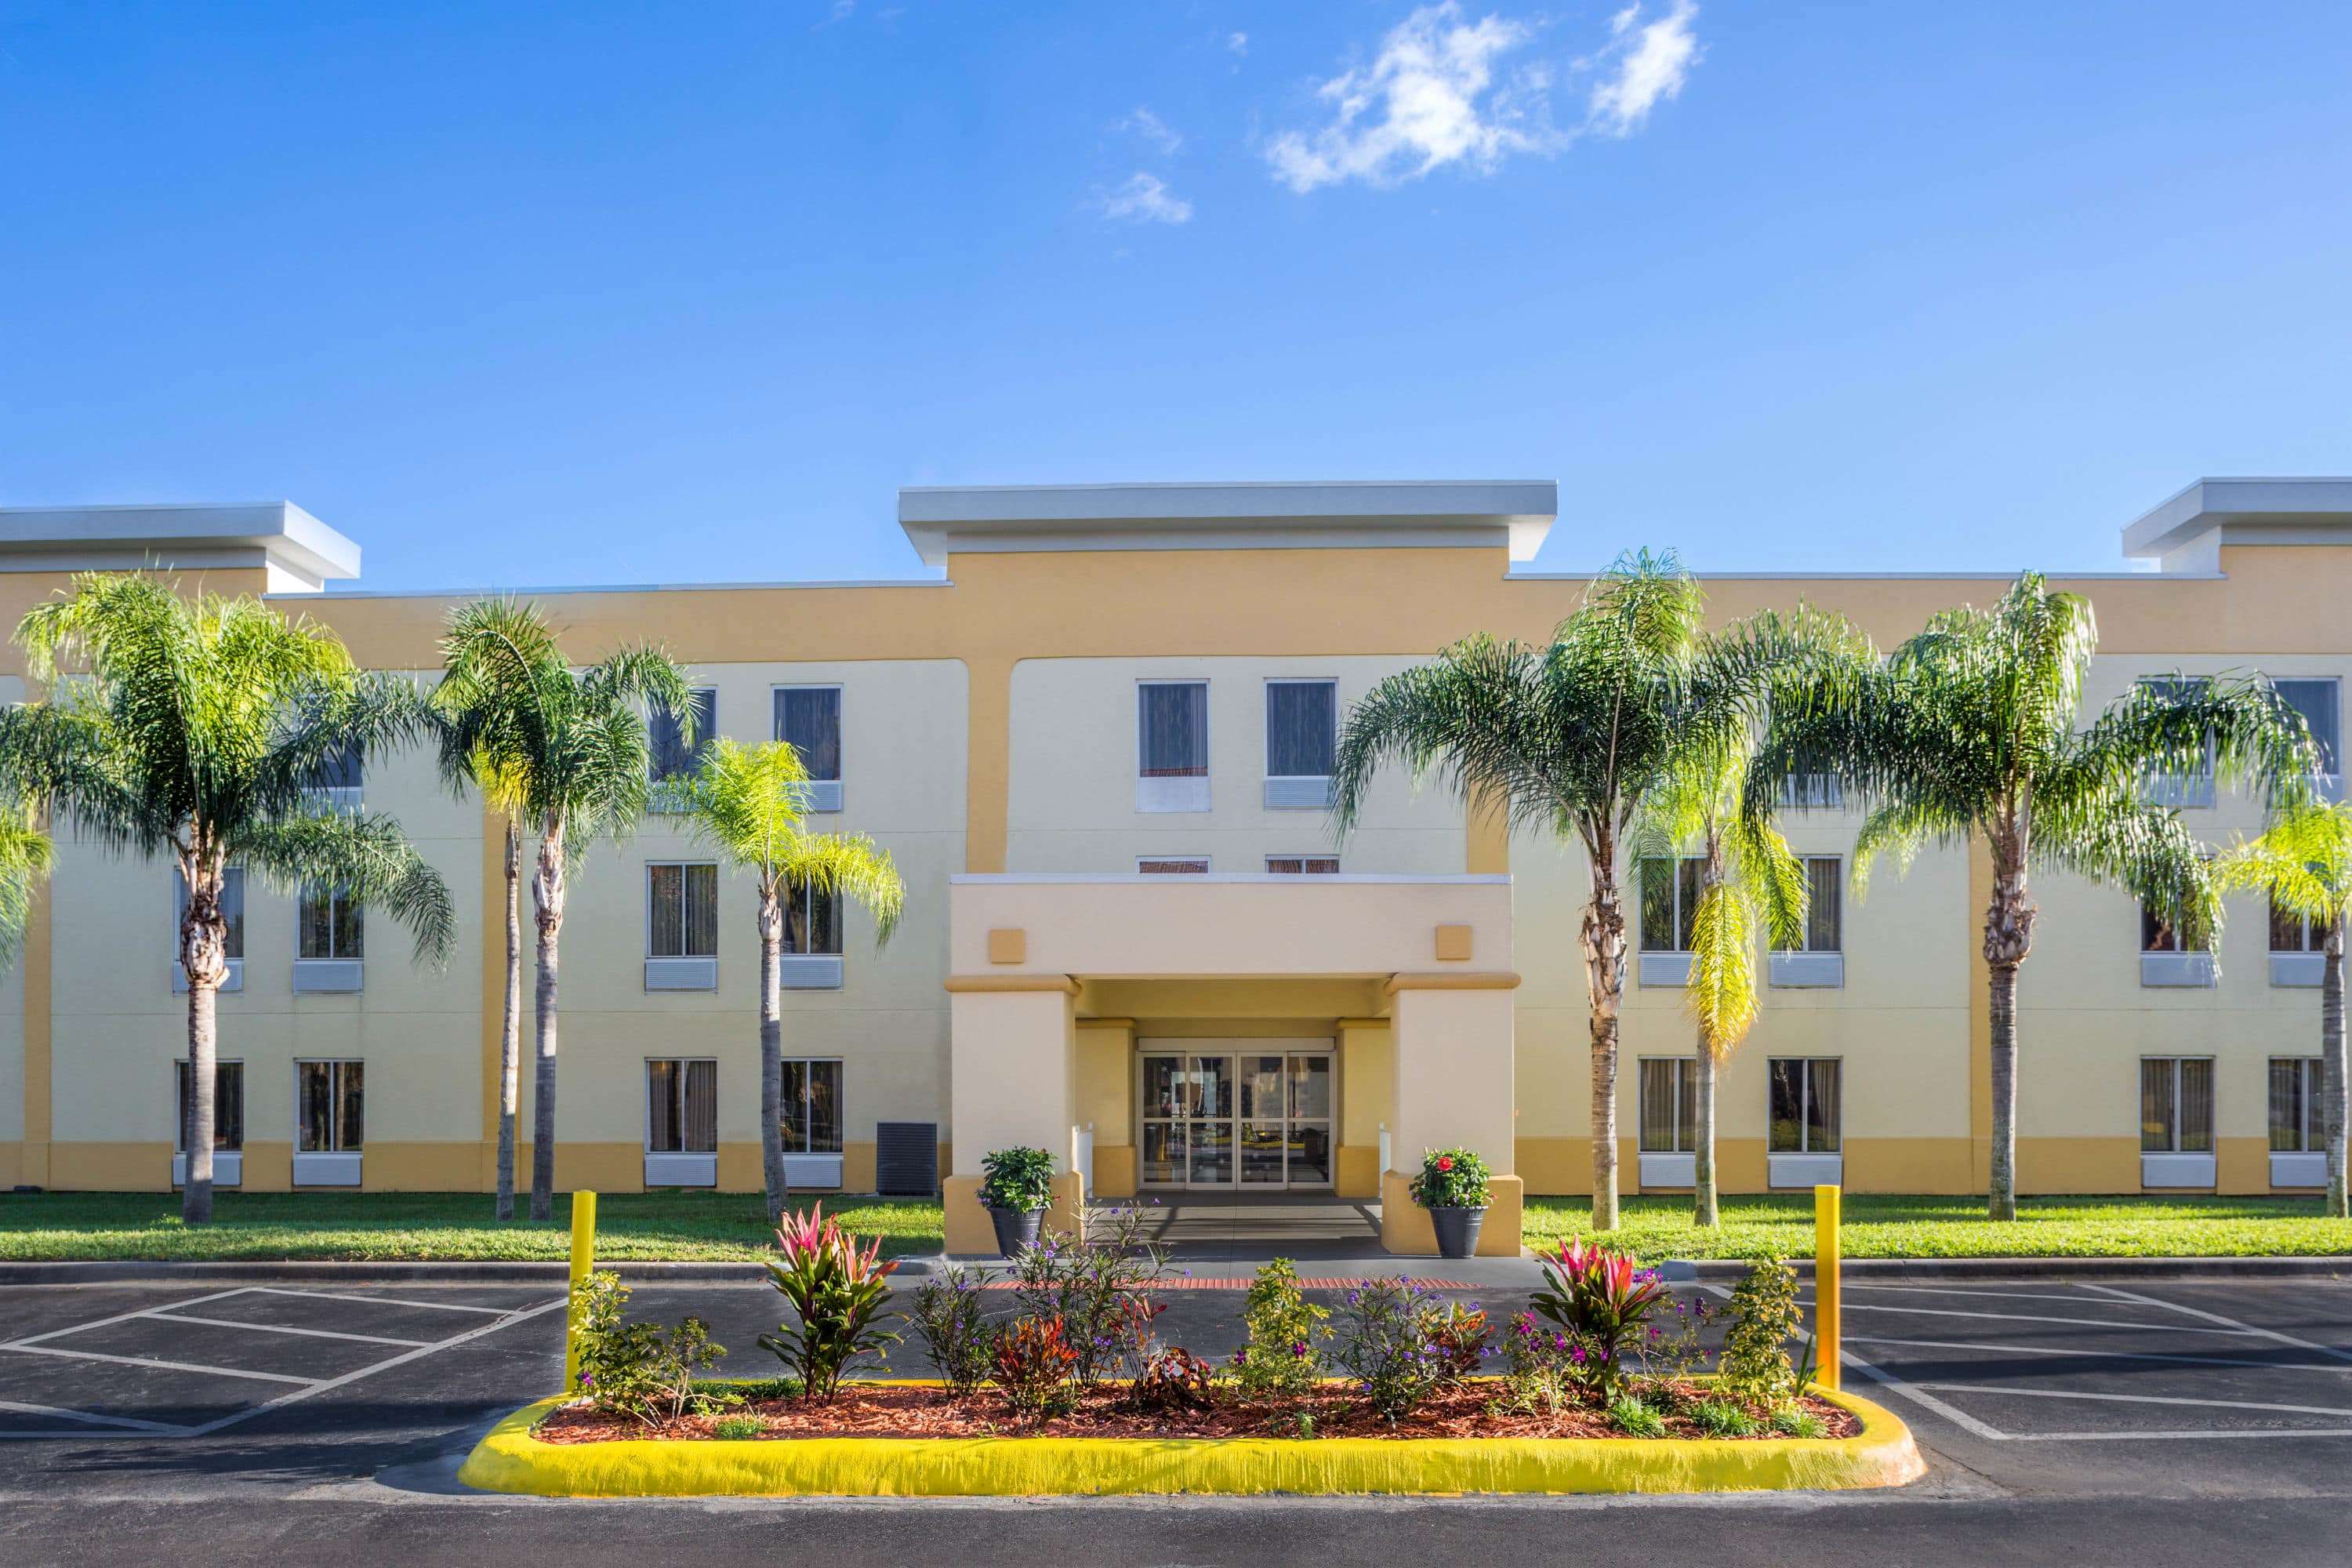 La Quinta Inn & Suites by Wyndham Orlando Universal area